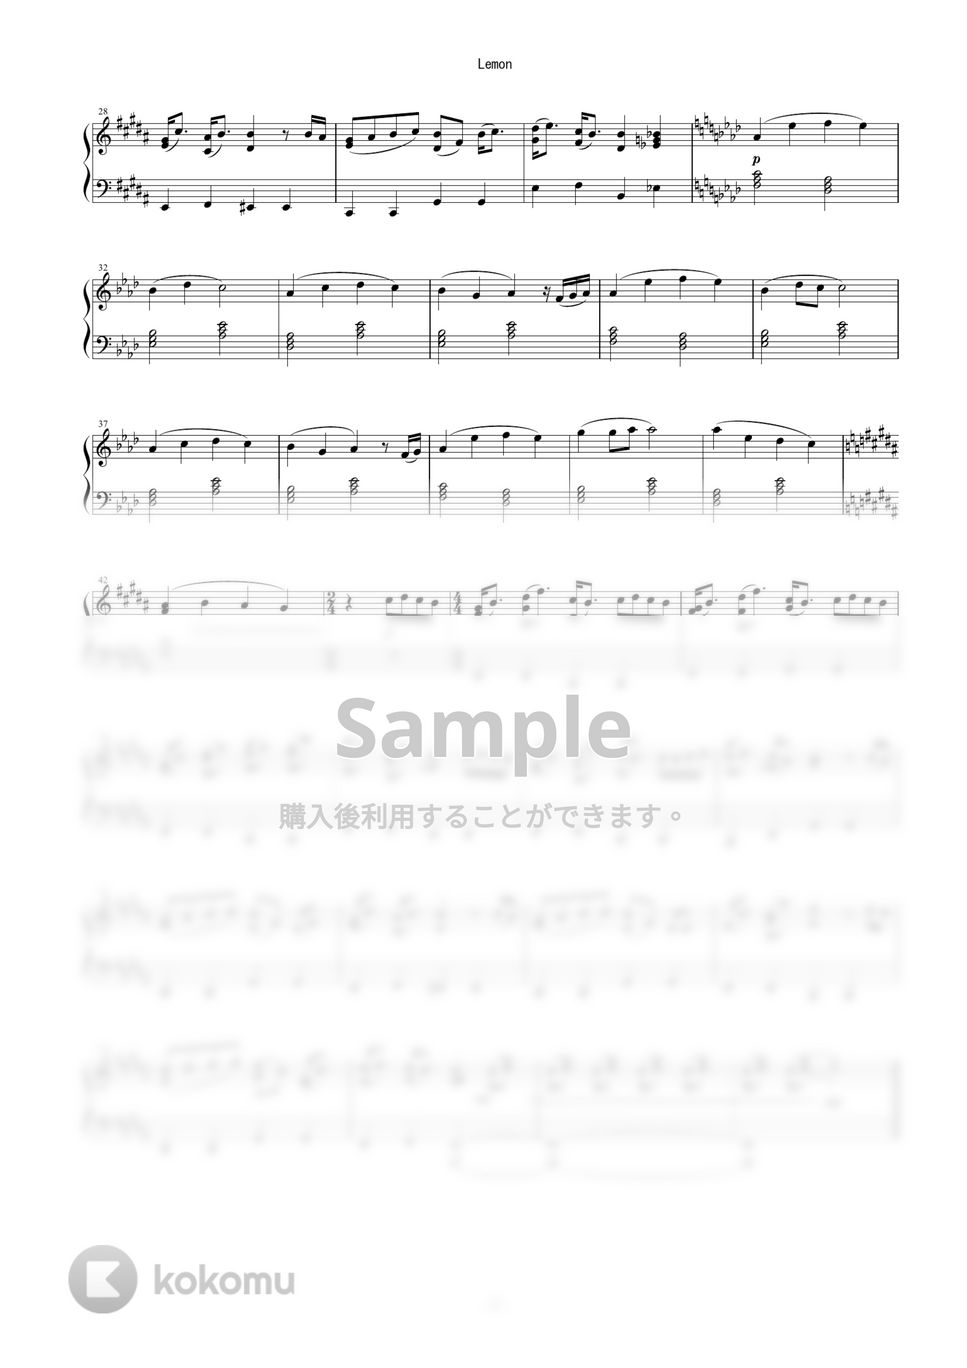 米津玄師 - 「LEMON」（ピアノソロ・初級） by 牛武奏人